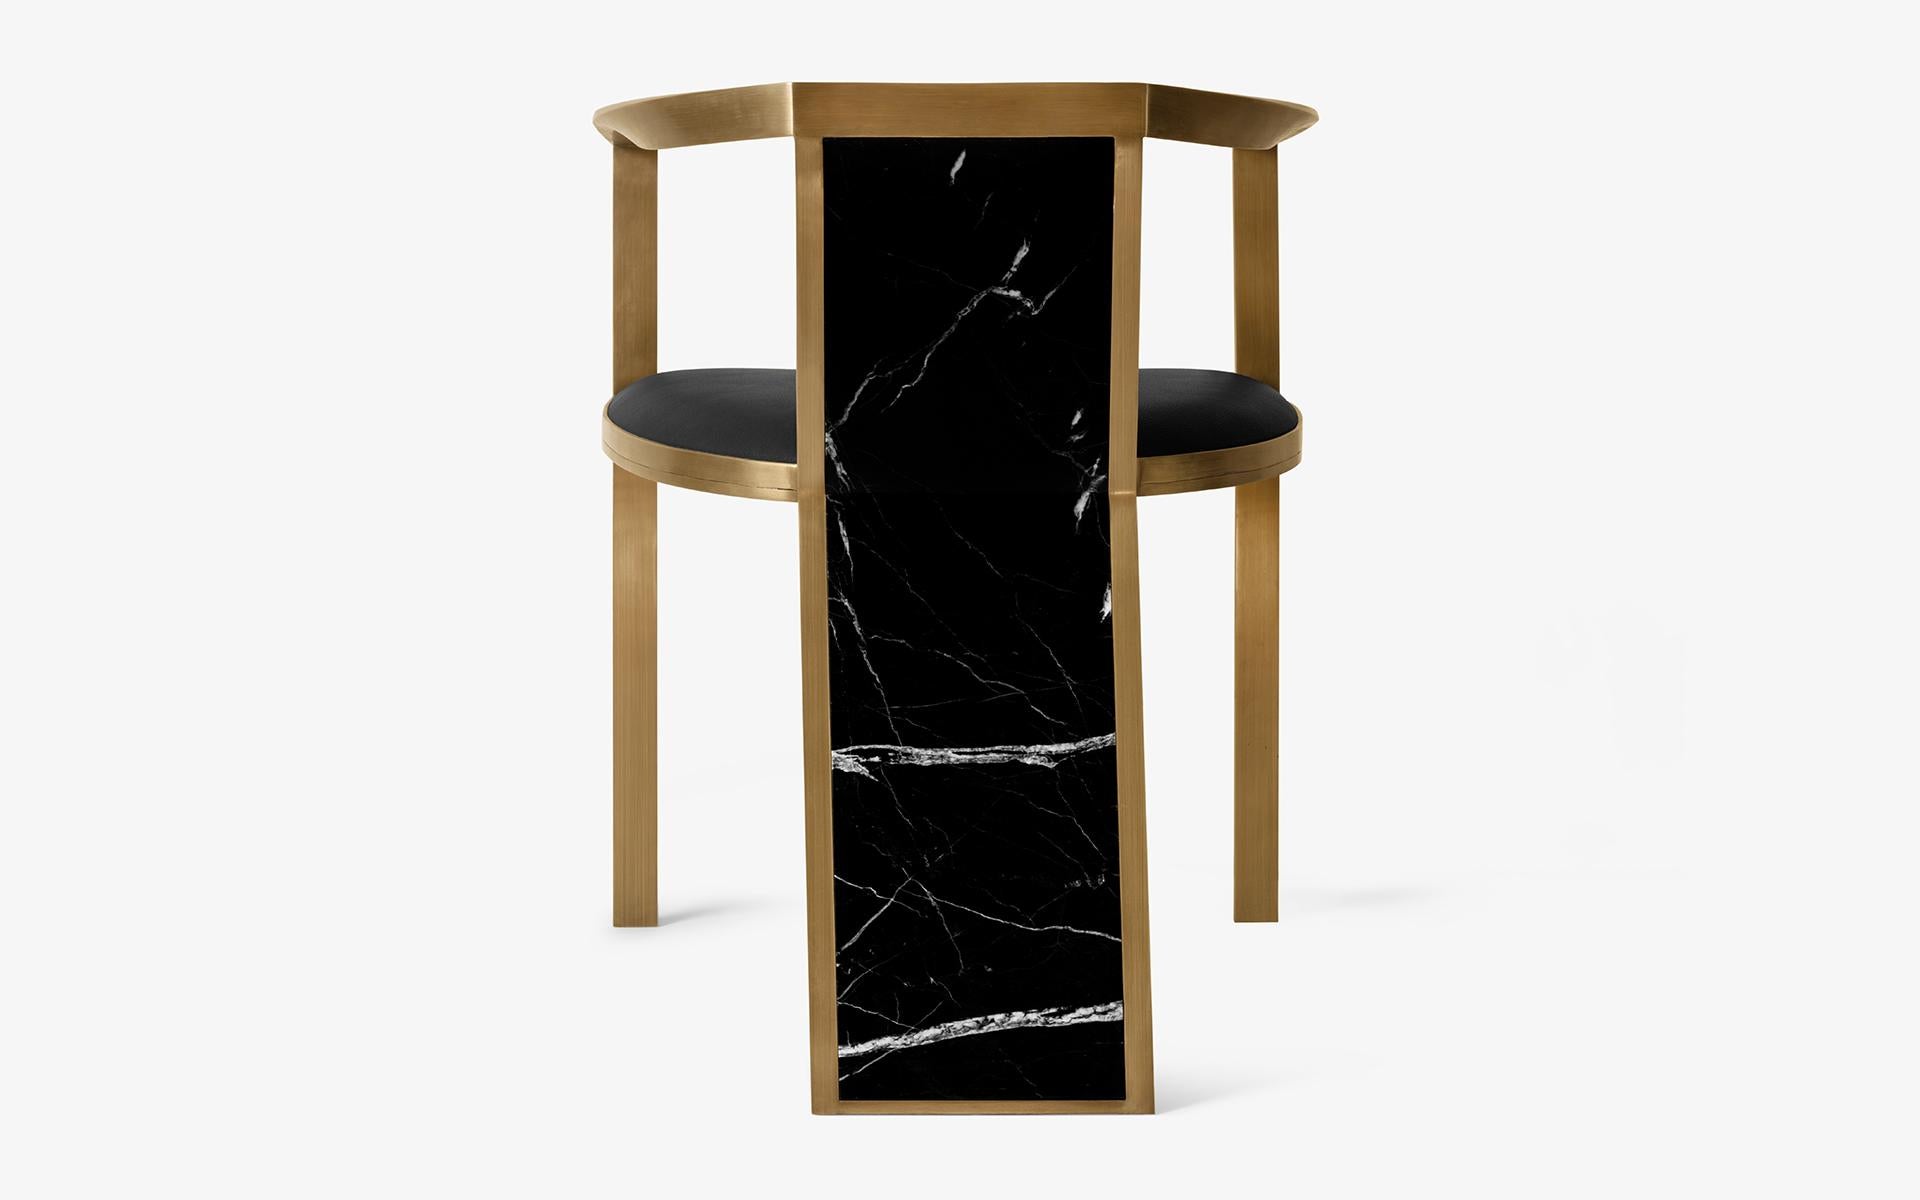 La chaise Hidden est conçue pour apporter à votre intérieur la sensation d'élégance créée par la combinaison du marbre et du laiton avec une forme parfaite.

 La chaise Hidden Chair arbore un design sophistiqué qui marie harmonieusement le marbre et